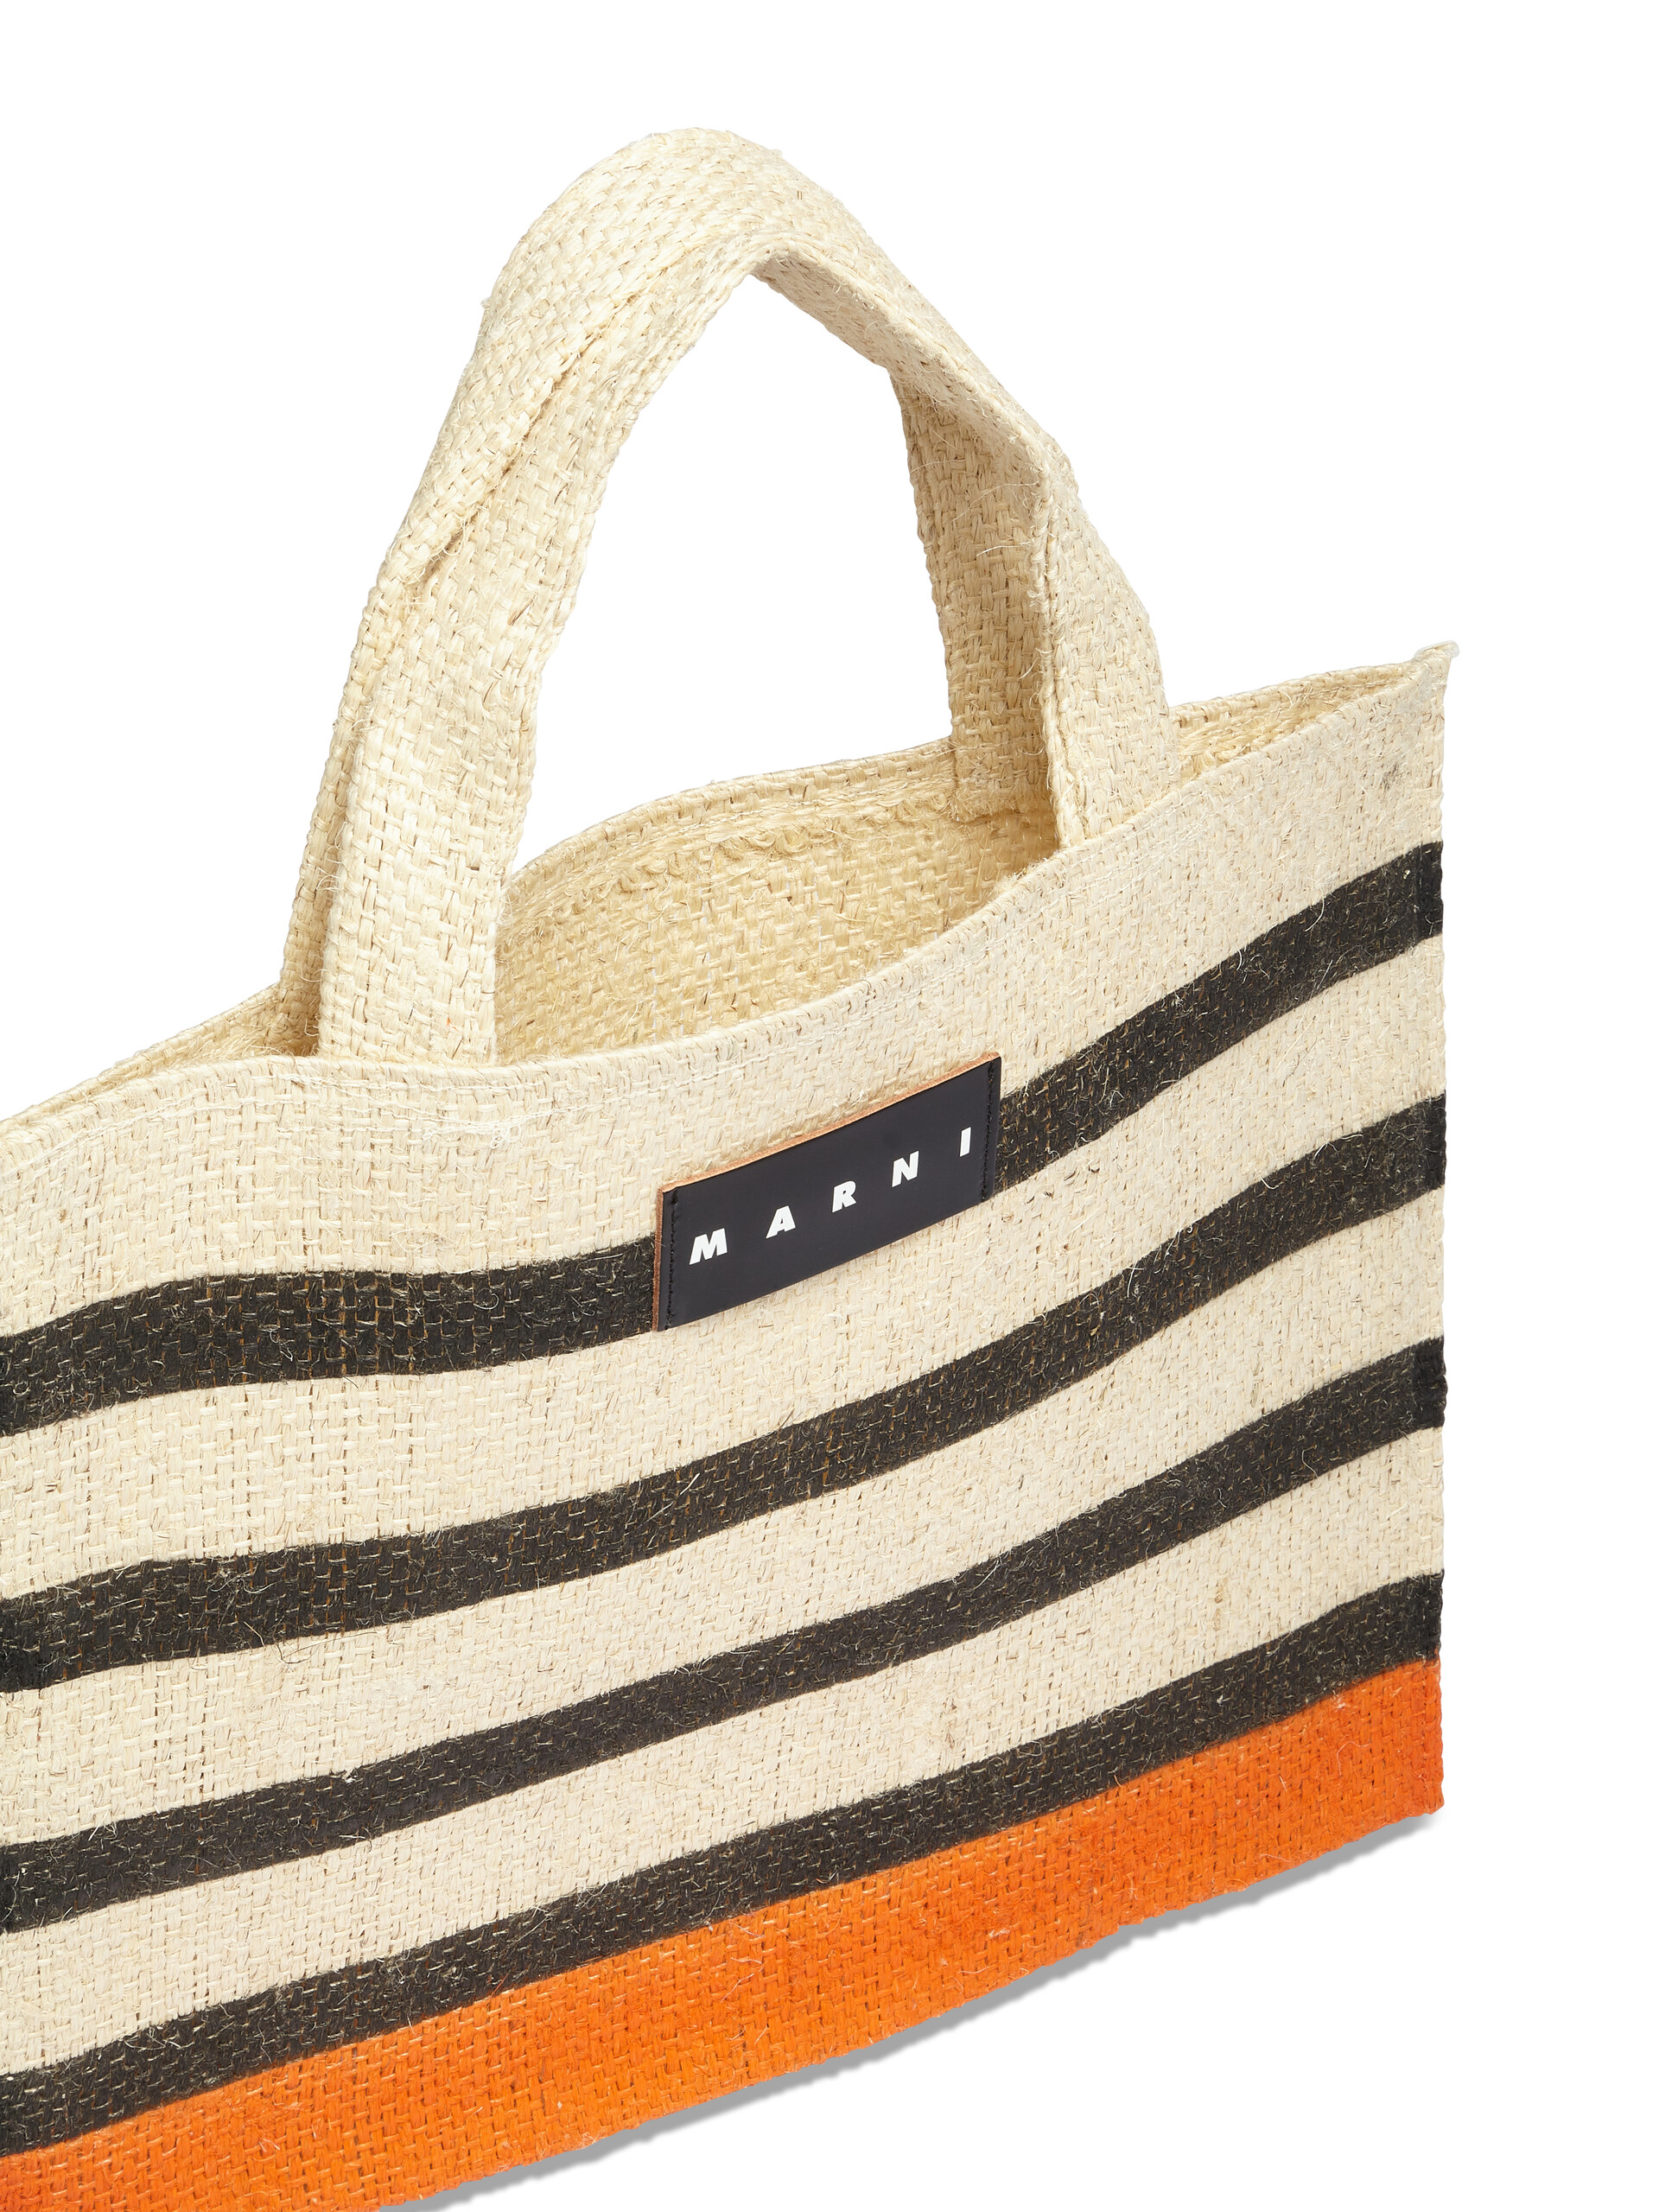 MARNI MARKET CANAPA small bag in black and orange natural fiber - Shopping Bags - Image 4